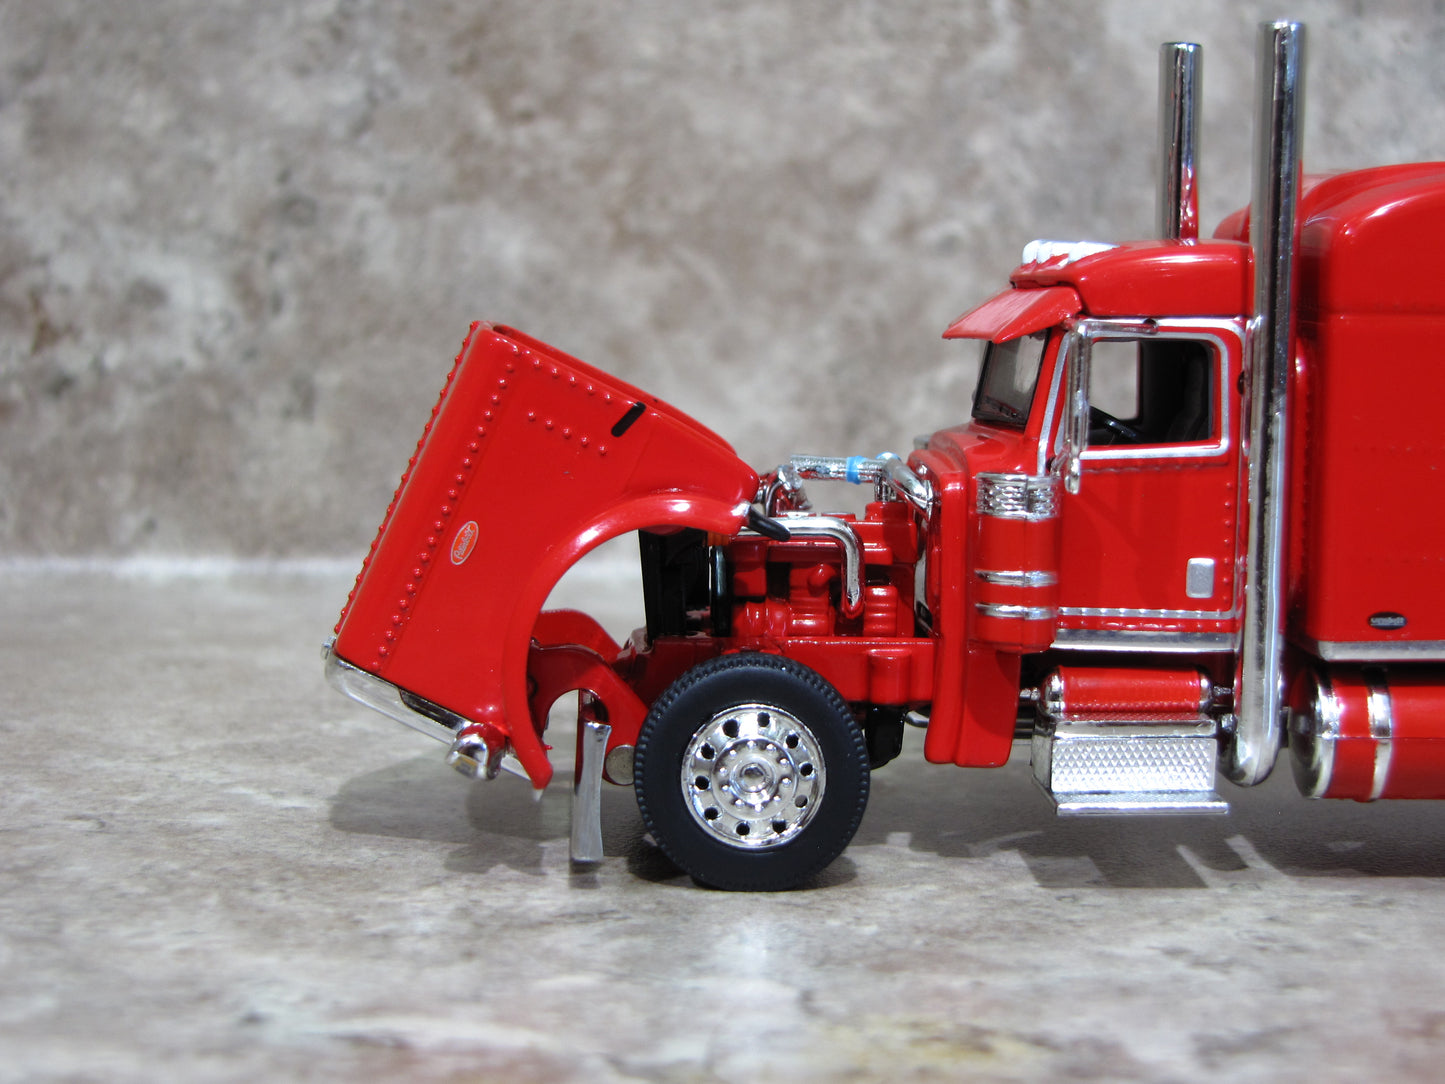 CAB 1738 Red 389 Peterbilt Semi Truck